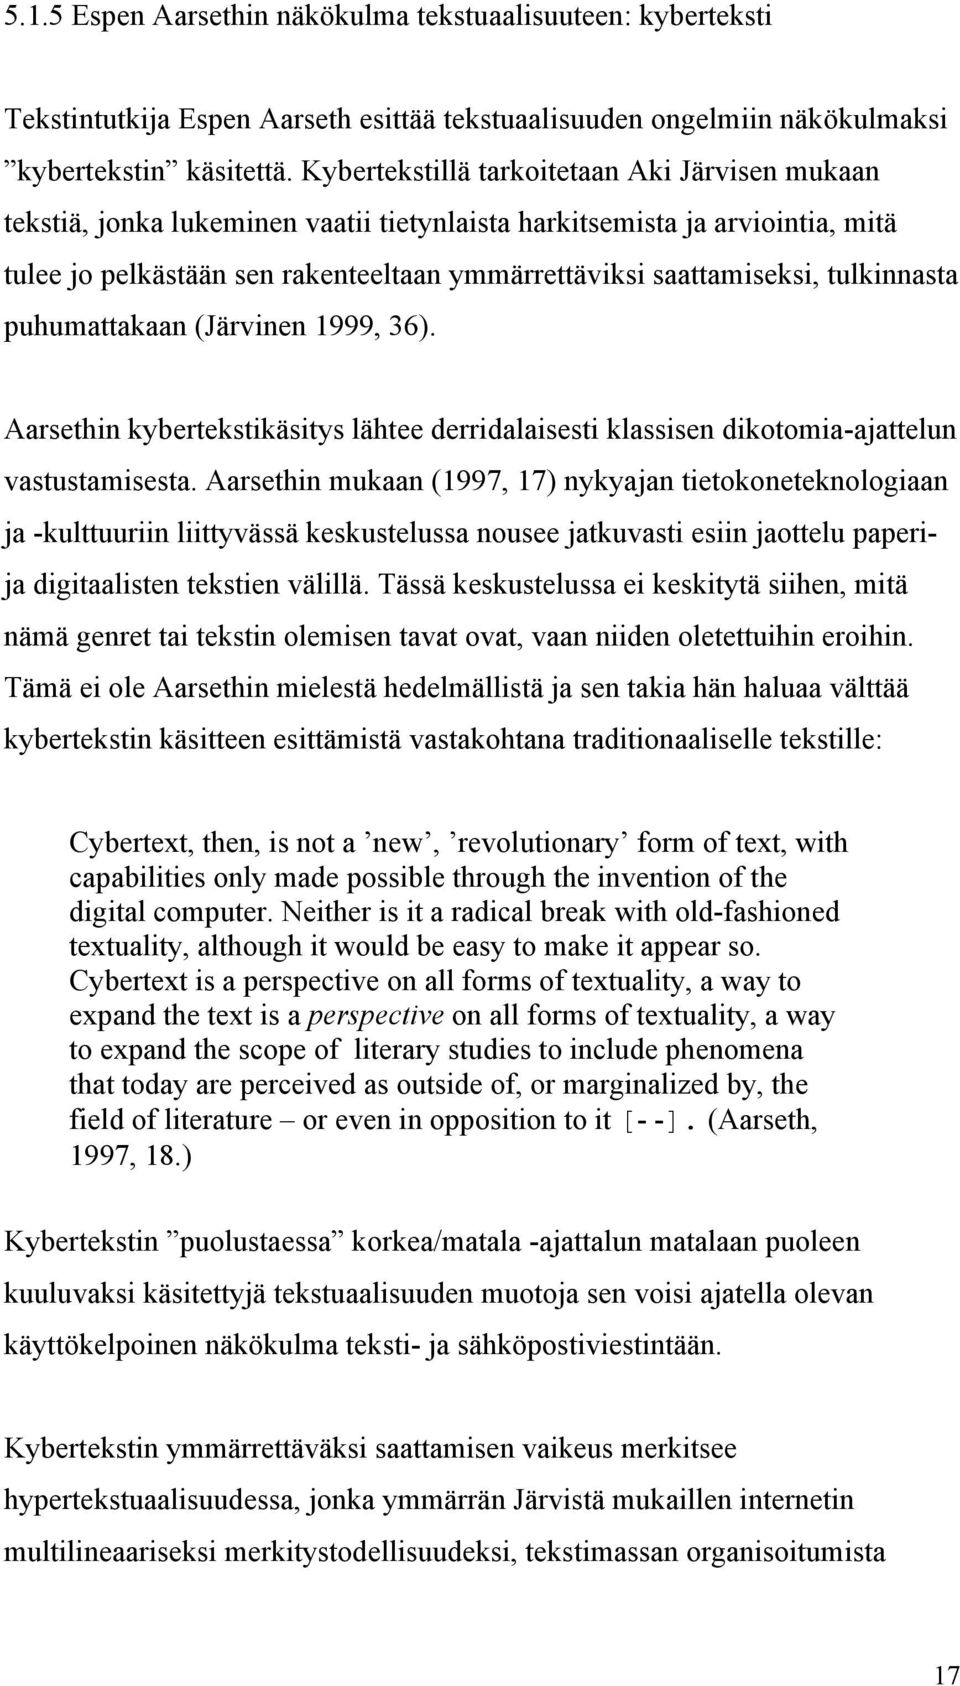 tulkinnasta puhumattakaan (Järvinen 1999, 36). Aarsethin kybertekstikäsitys lähtee derridalaisesti klassisen dikotomia-ajattelun vastustamisesta.